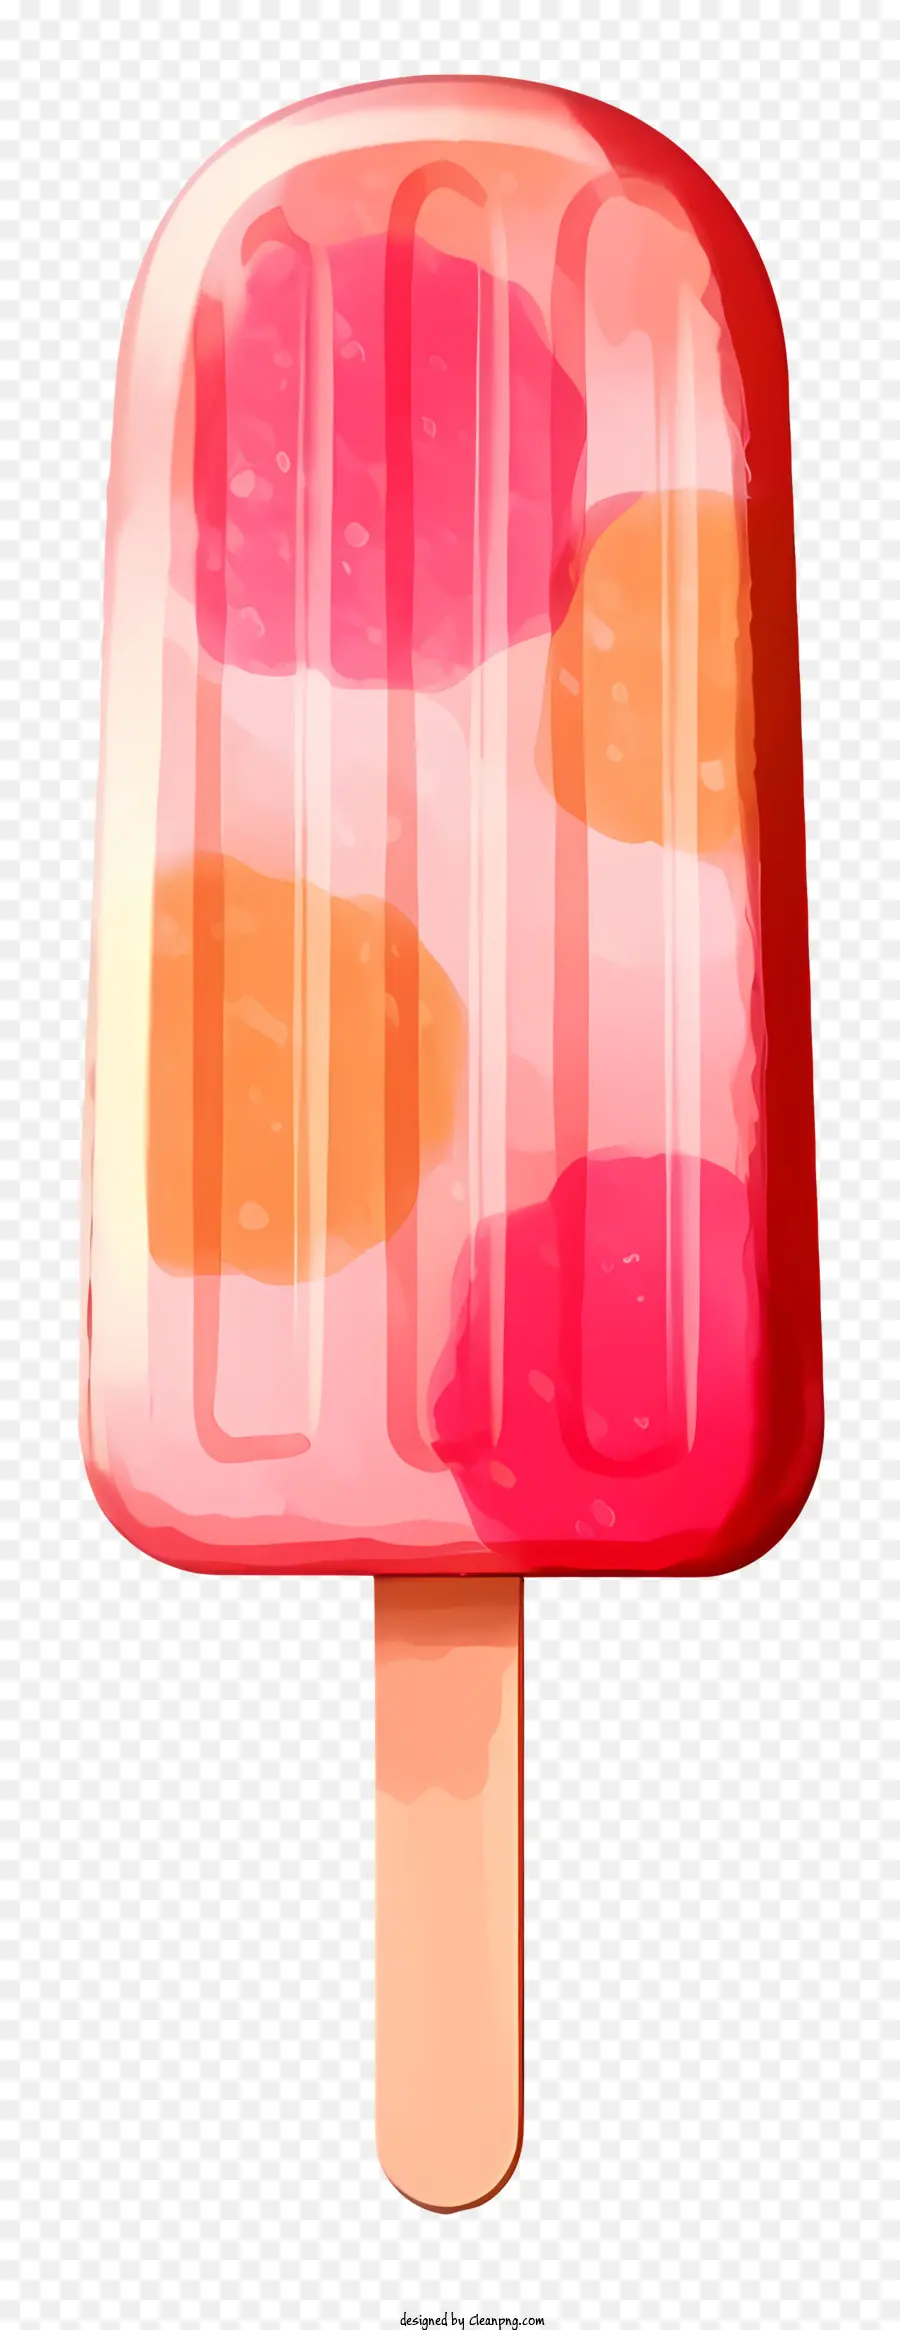 cono gelato rosa e arance arancioni bastoncini bianchi ciotola bianca piatta e realistica - Cono di gelato vivace e realistico su sfondo bianco